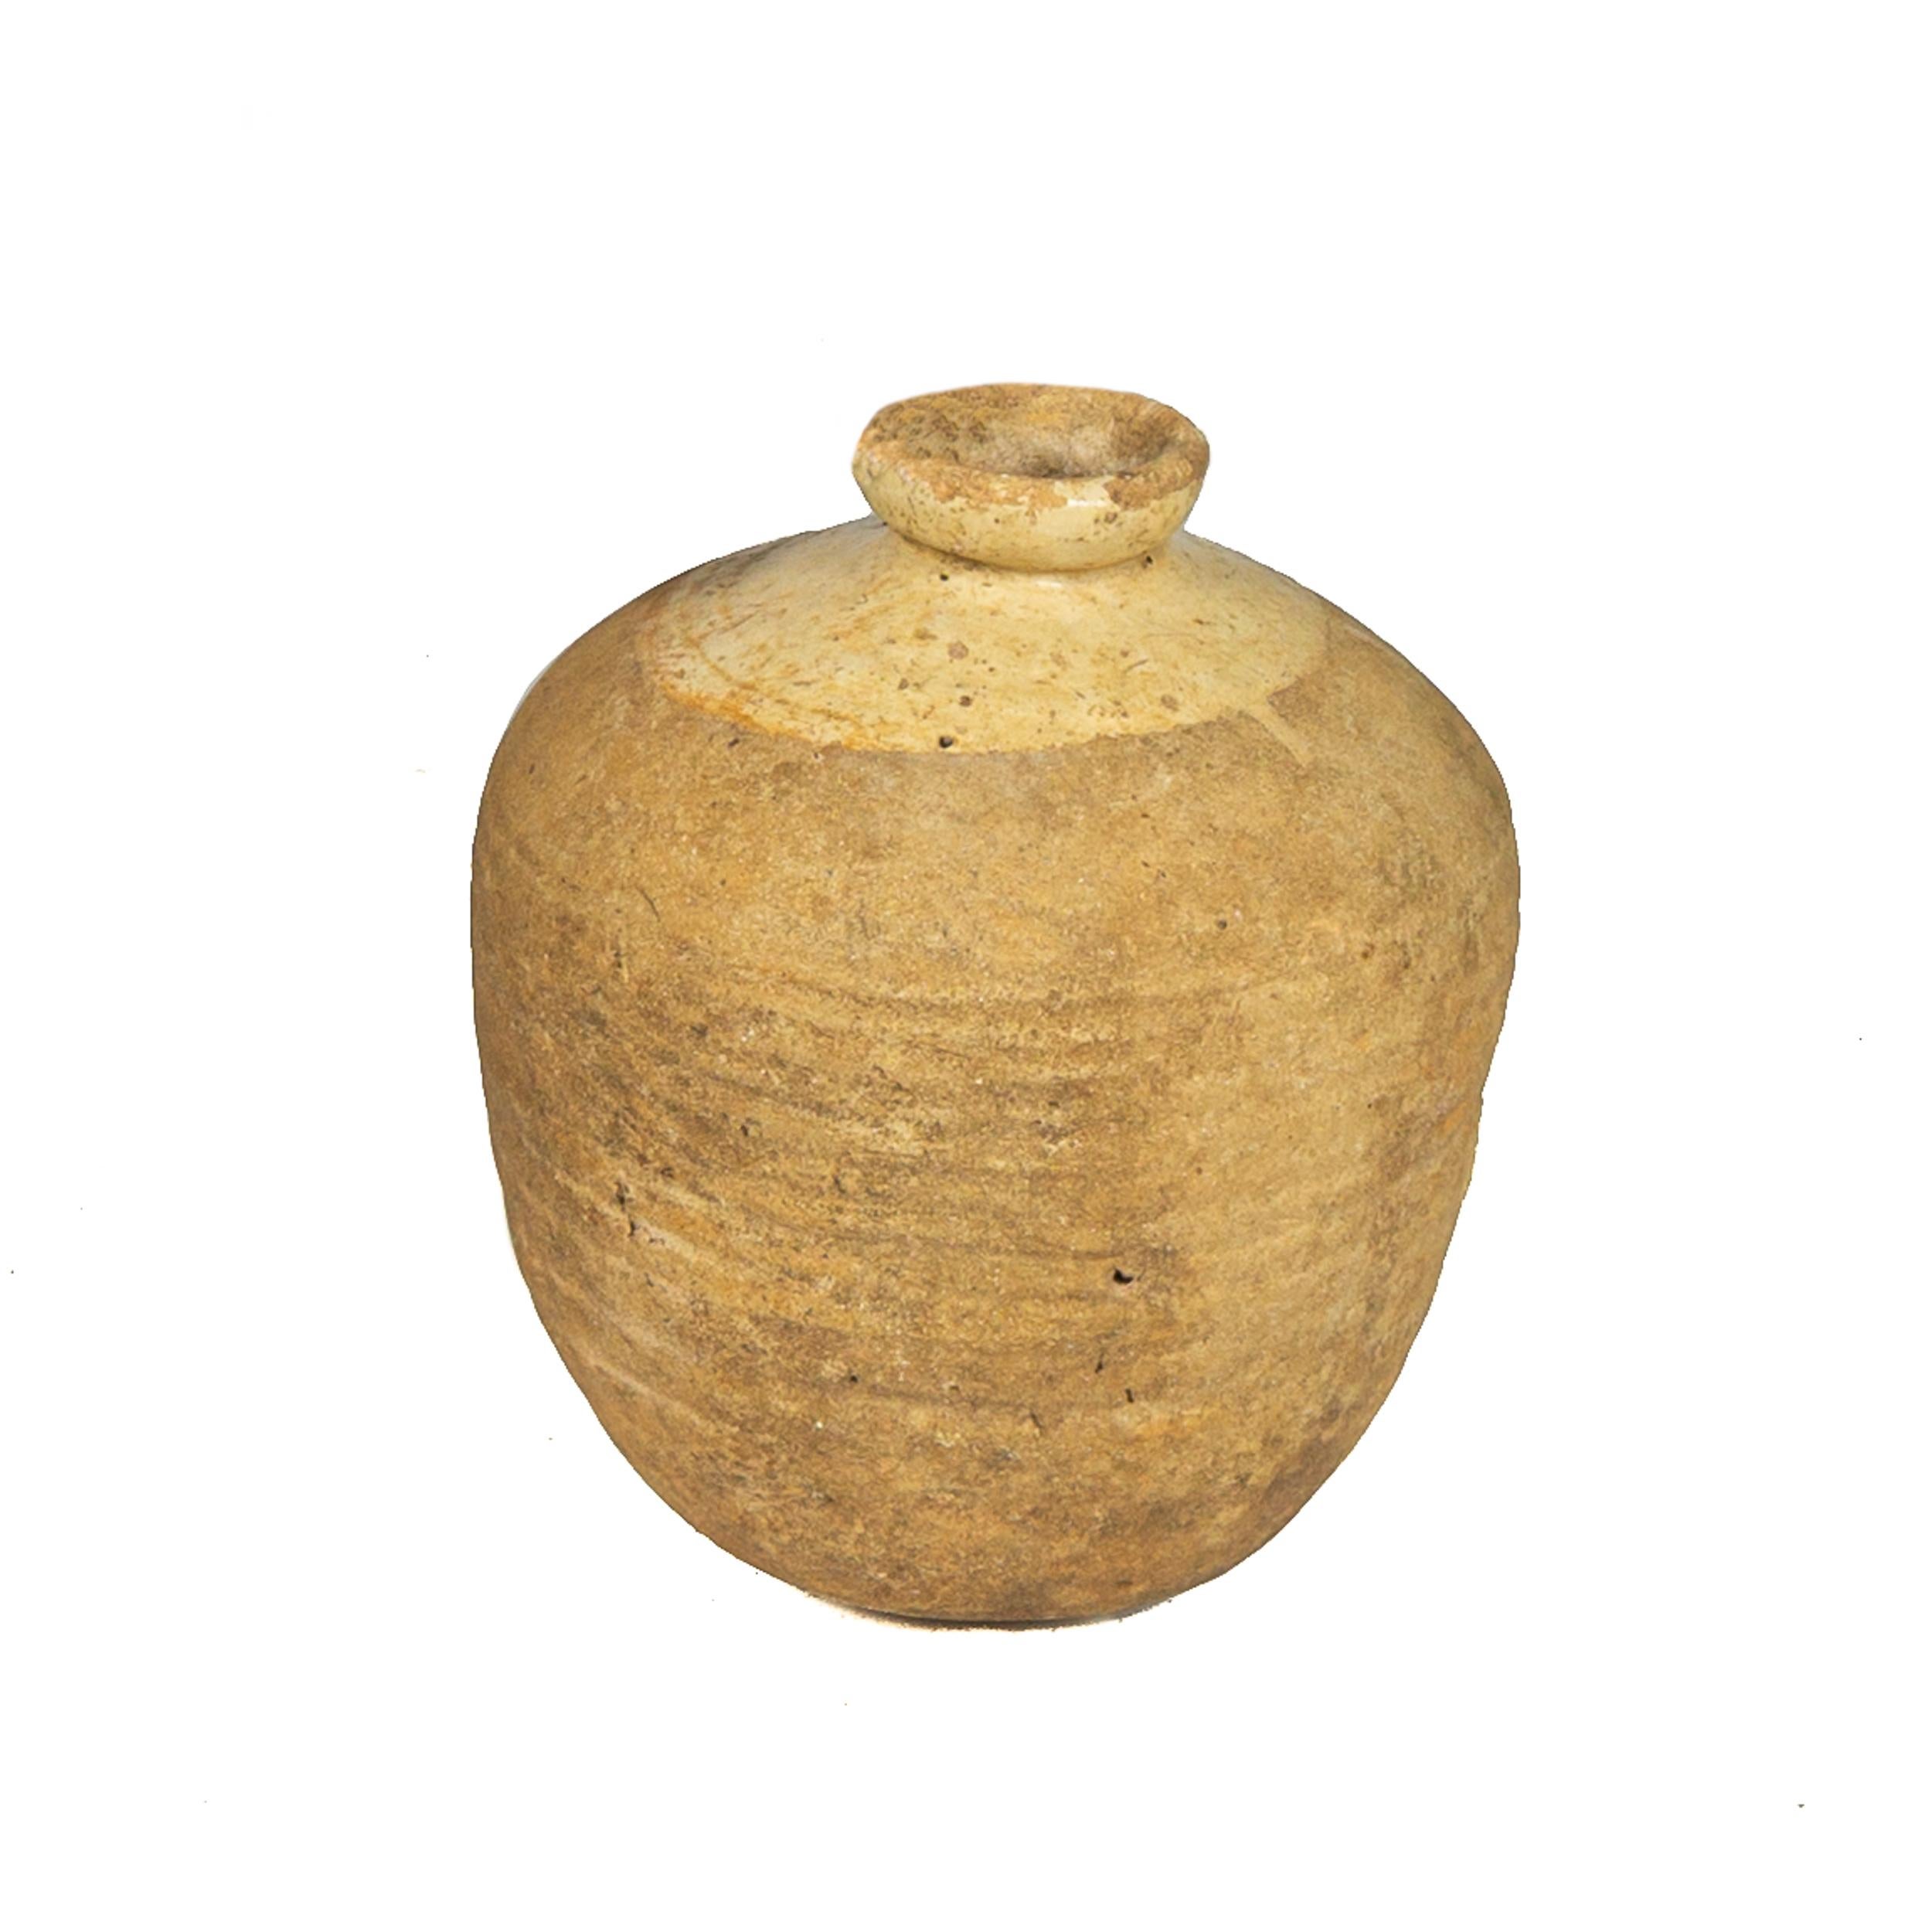 Esta elegante tinaja antigua fue fabricada a mano en España hacia 1760; de forma redonda con base y cuello estrechos, la vasija presenta un borde enrollado en la parte superior acentuado con un acabado vidriado de color mostaza. La pieza española